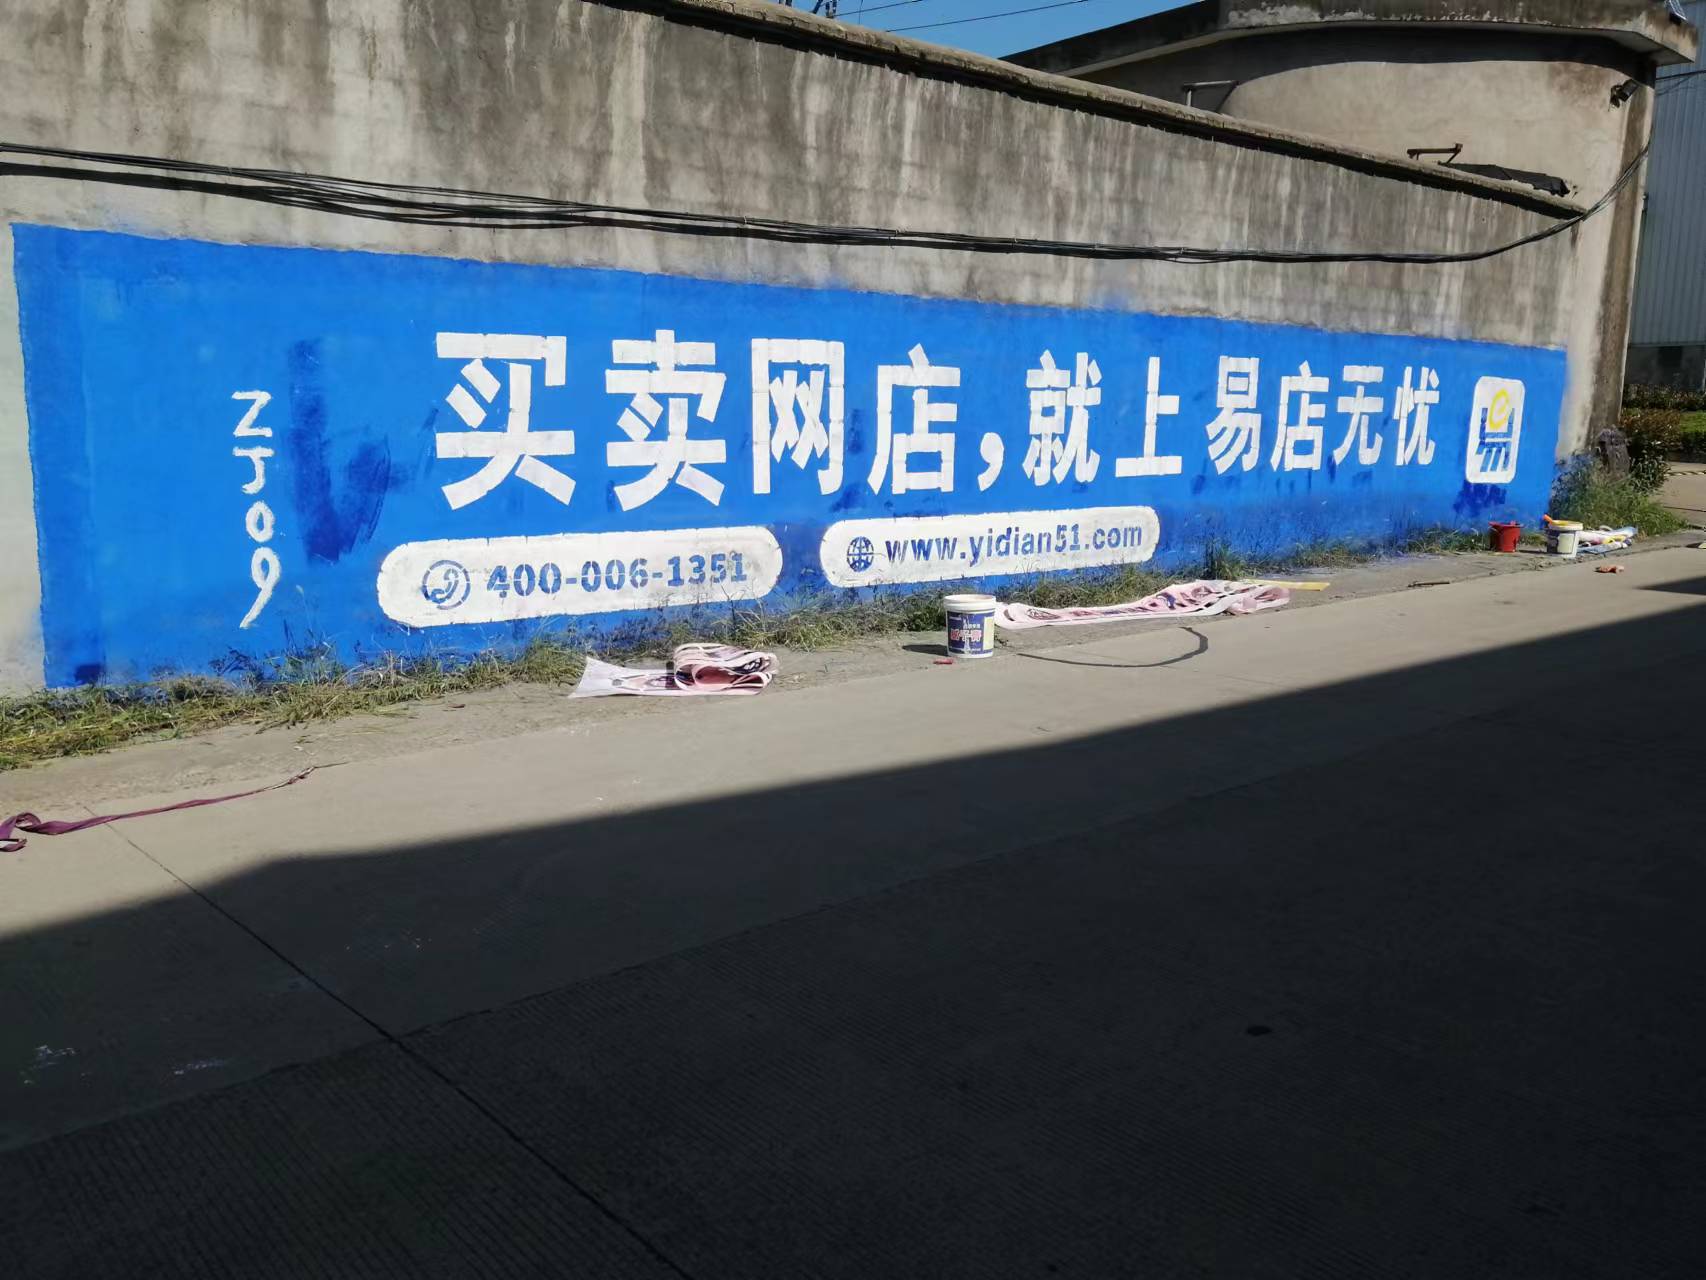 武汉市西安墙体广告 喷绘布广告厂家西安墙体广告制作 选新美公司  陕西刷墙 喷绘布安装  西安墙体广告 喷绘布广告